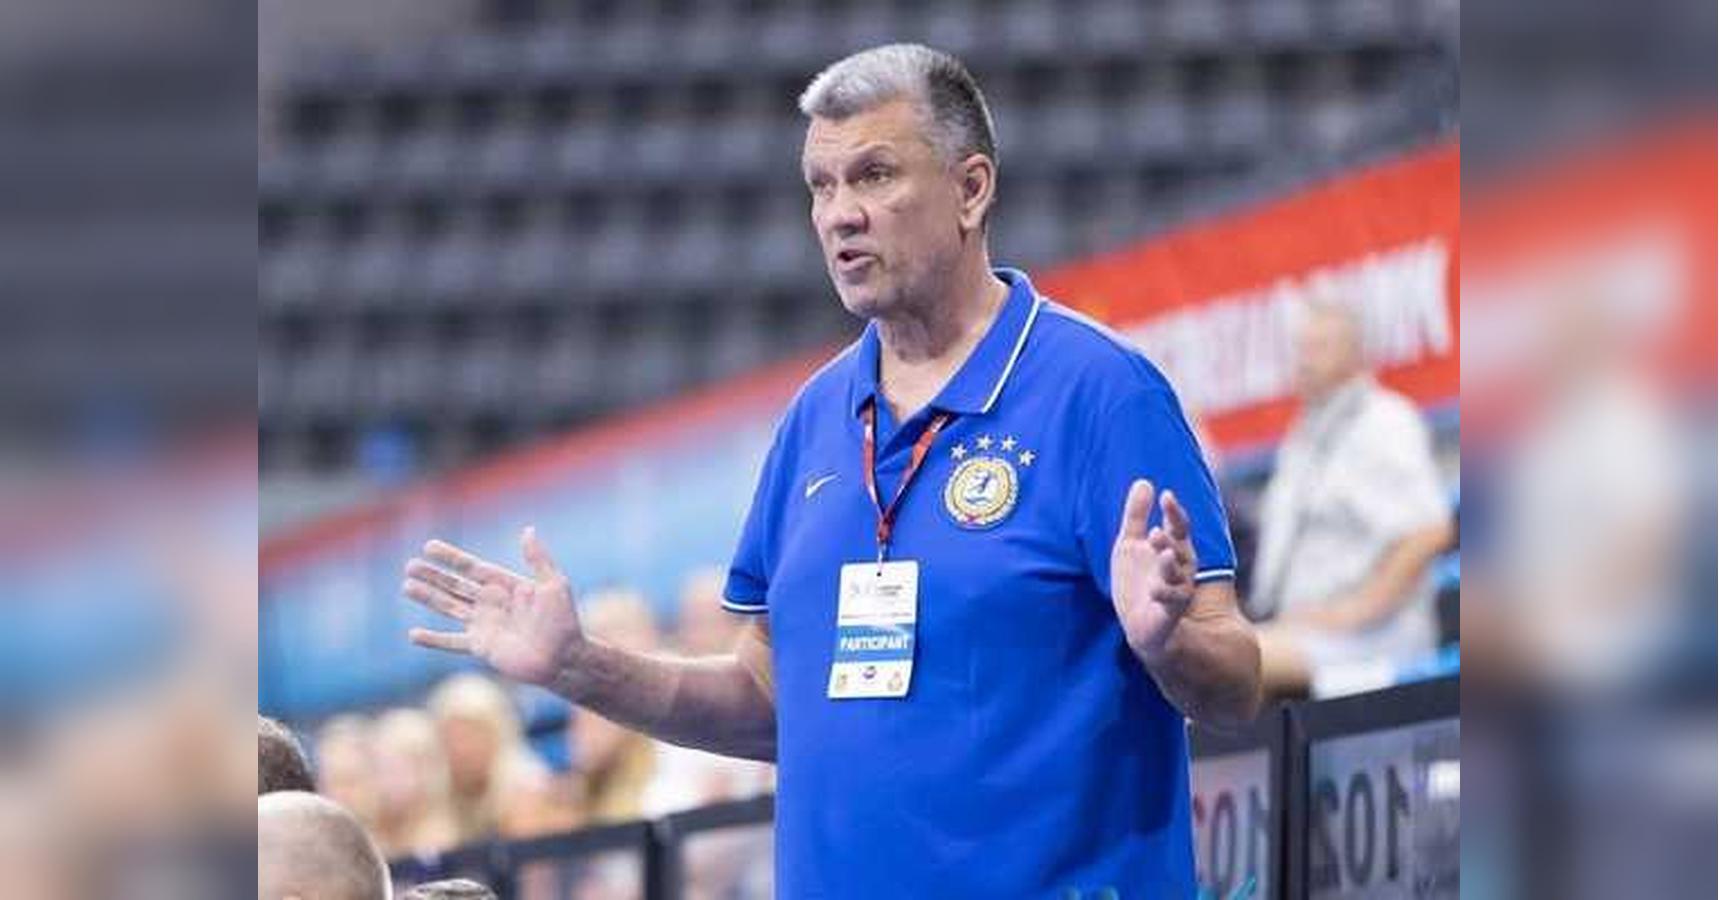 Помер головний тренер гандбольного клубу Одеса Михайло Щукін – йому було 64 роки